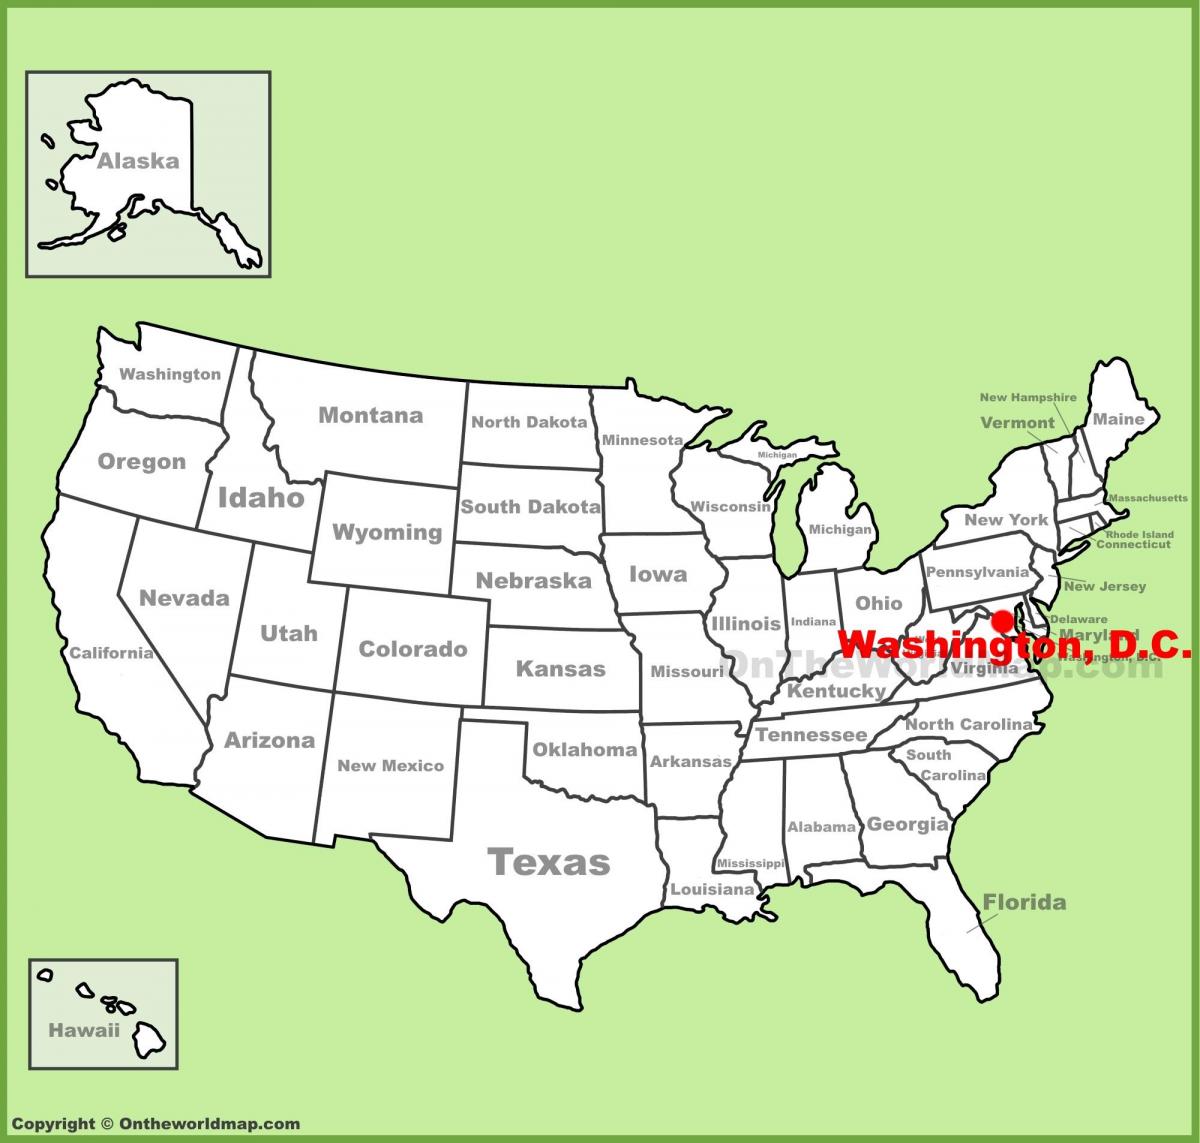 Washington, dc na karti SAD-u